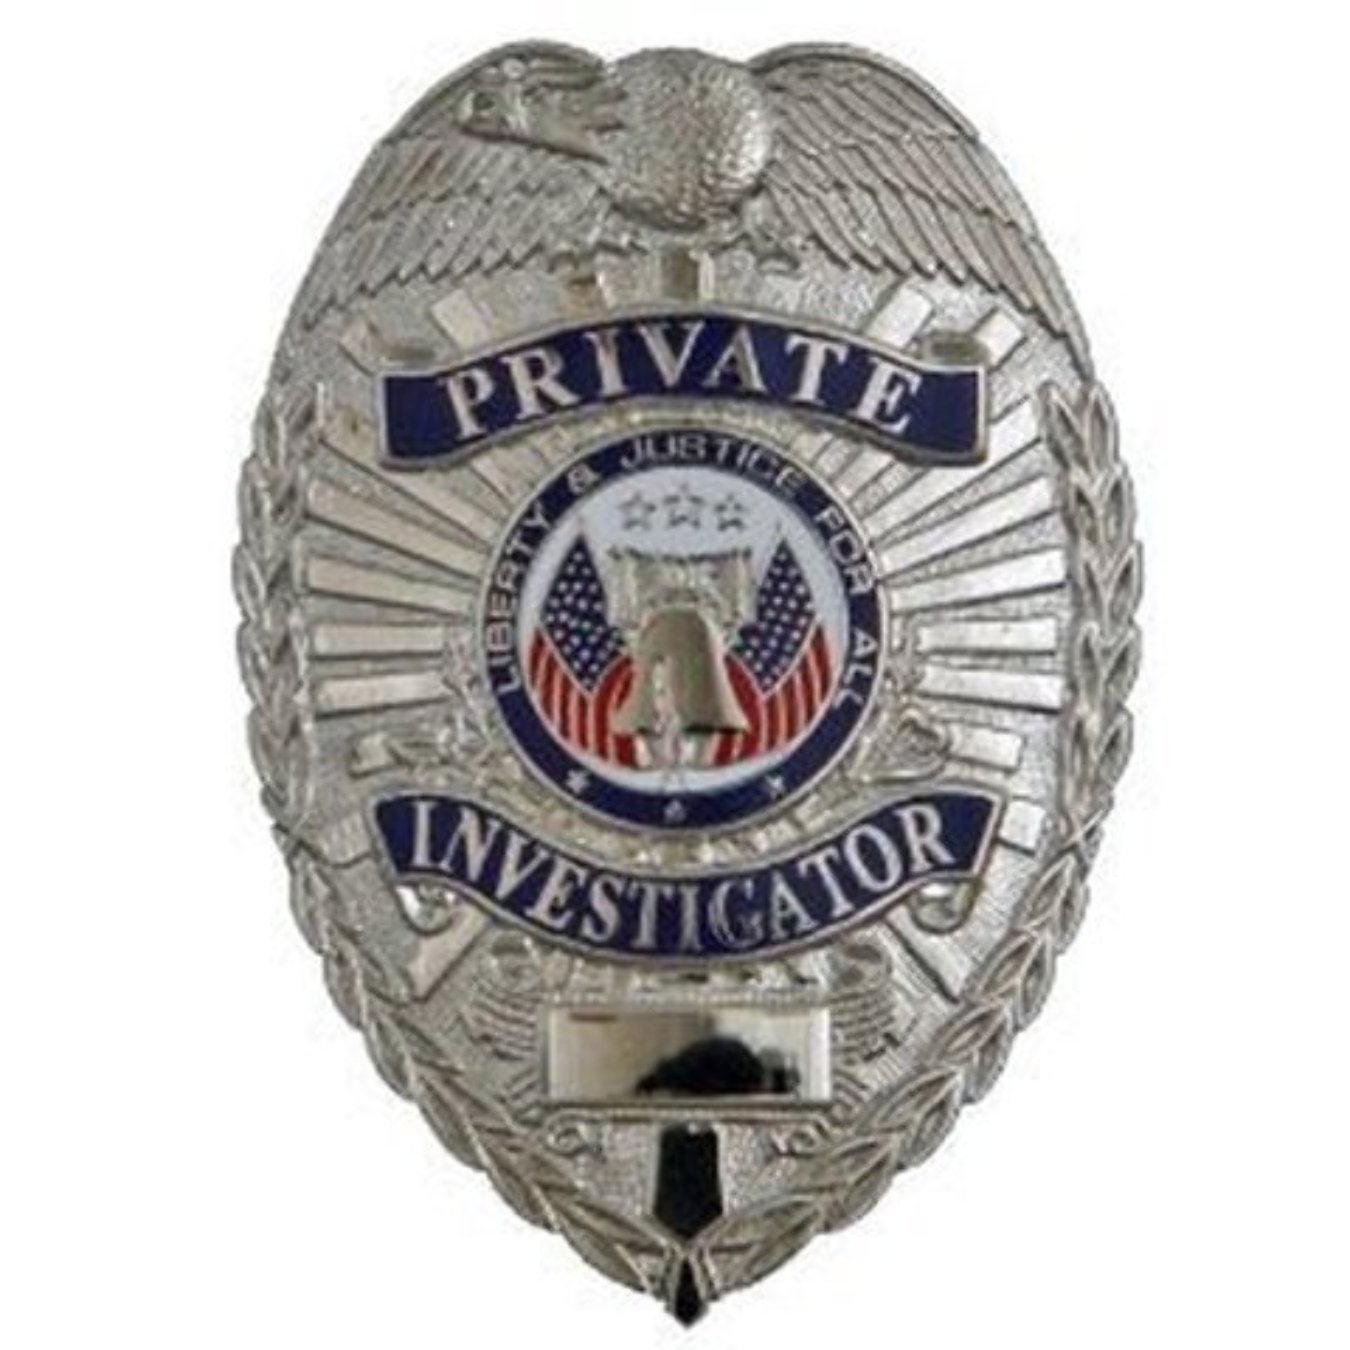 Private Detective Police Badg